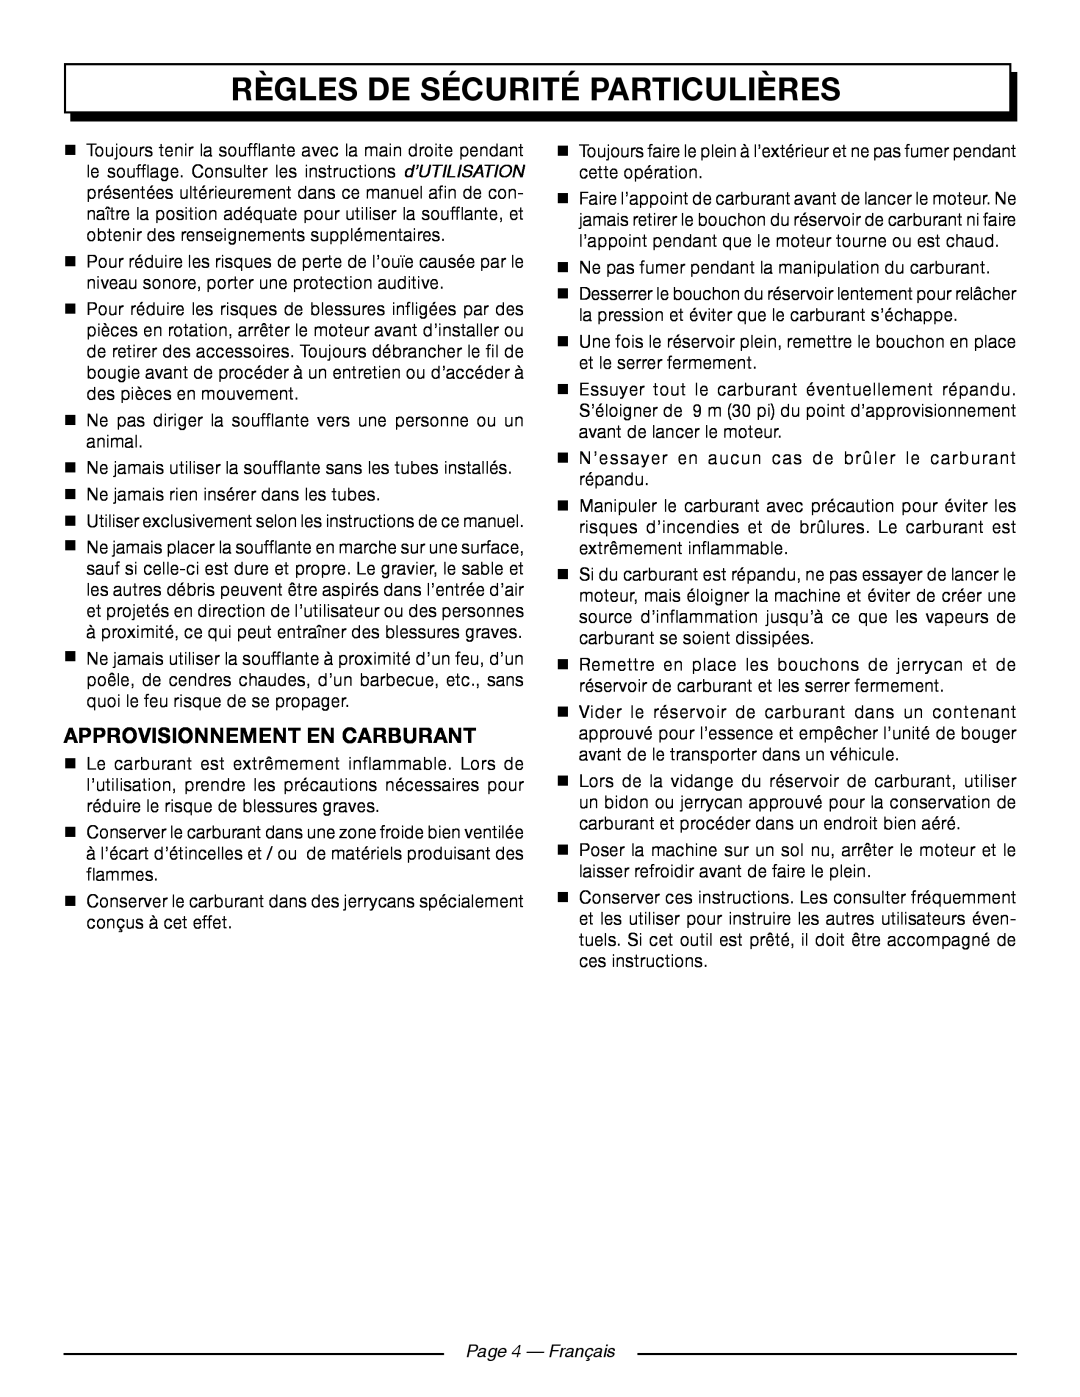 Homelite UT09521 manuel dutilisation Règles De Sécurité Particulières, Approvisionnement En Carburant, Page 4 - Français 